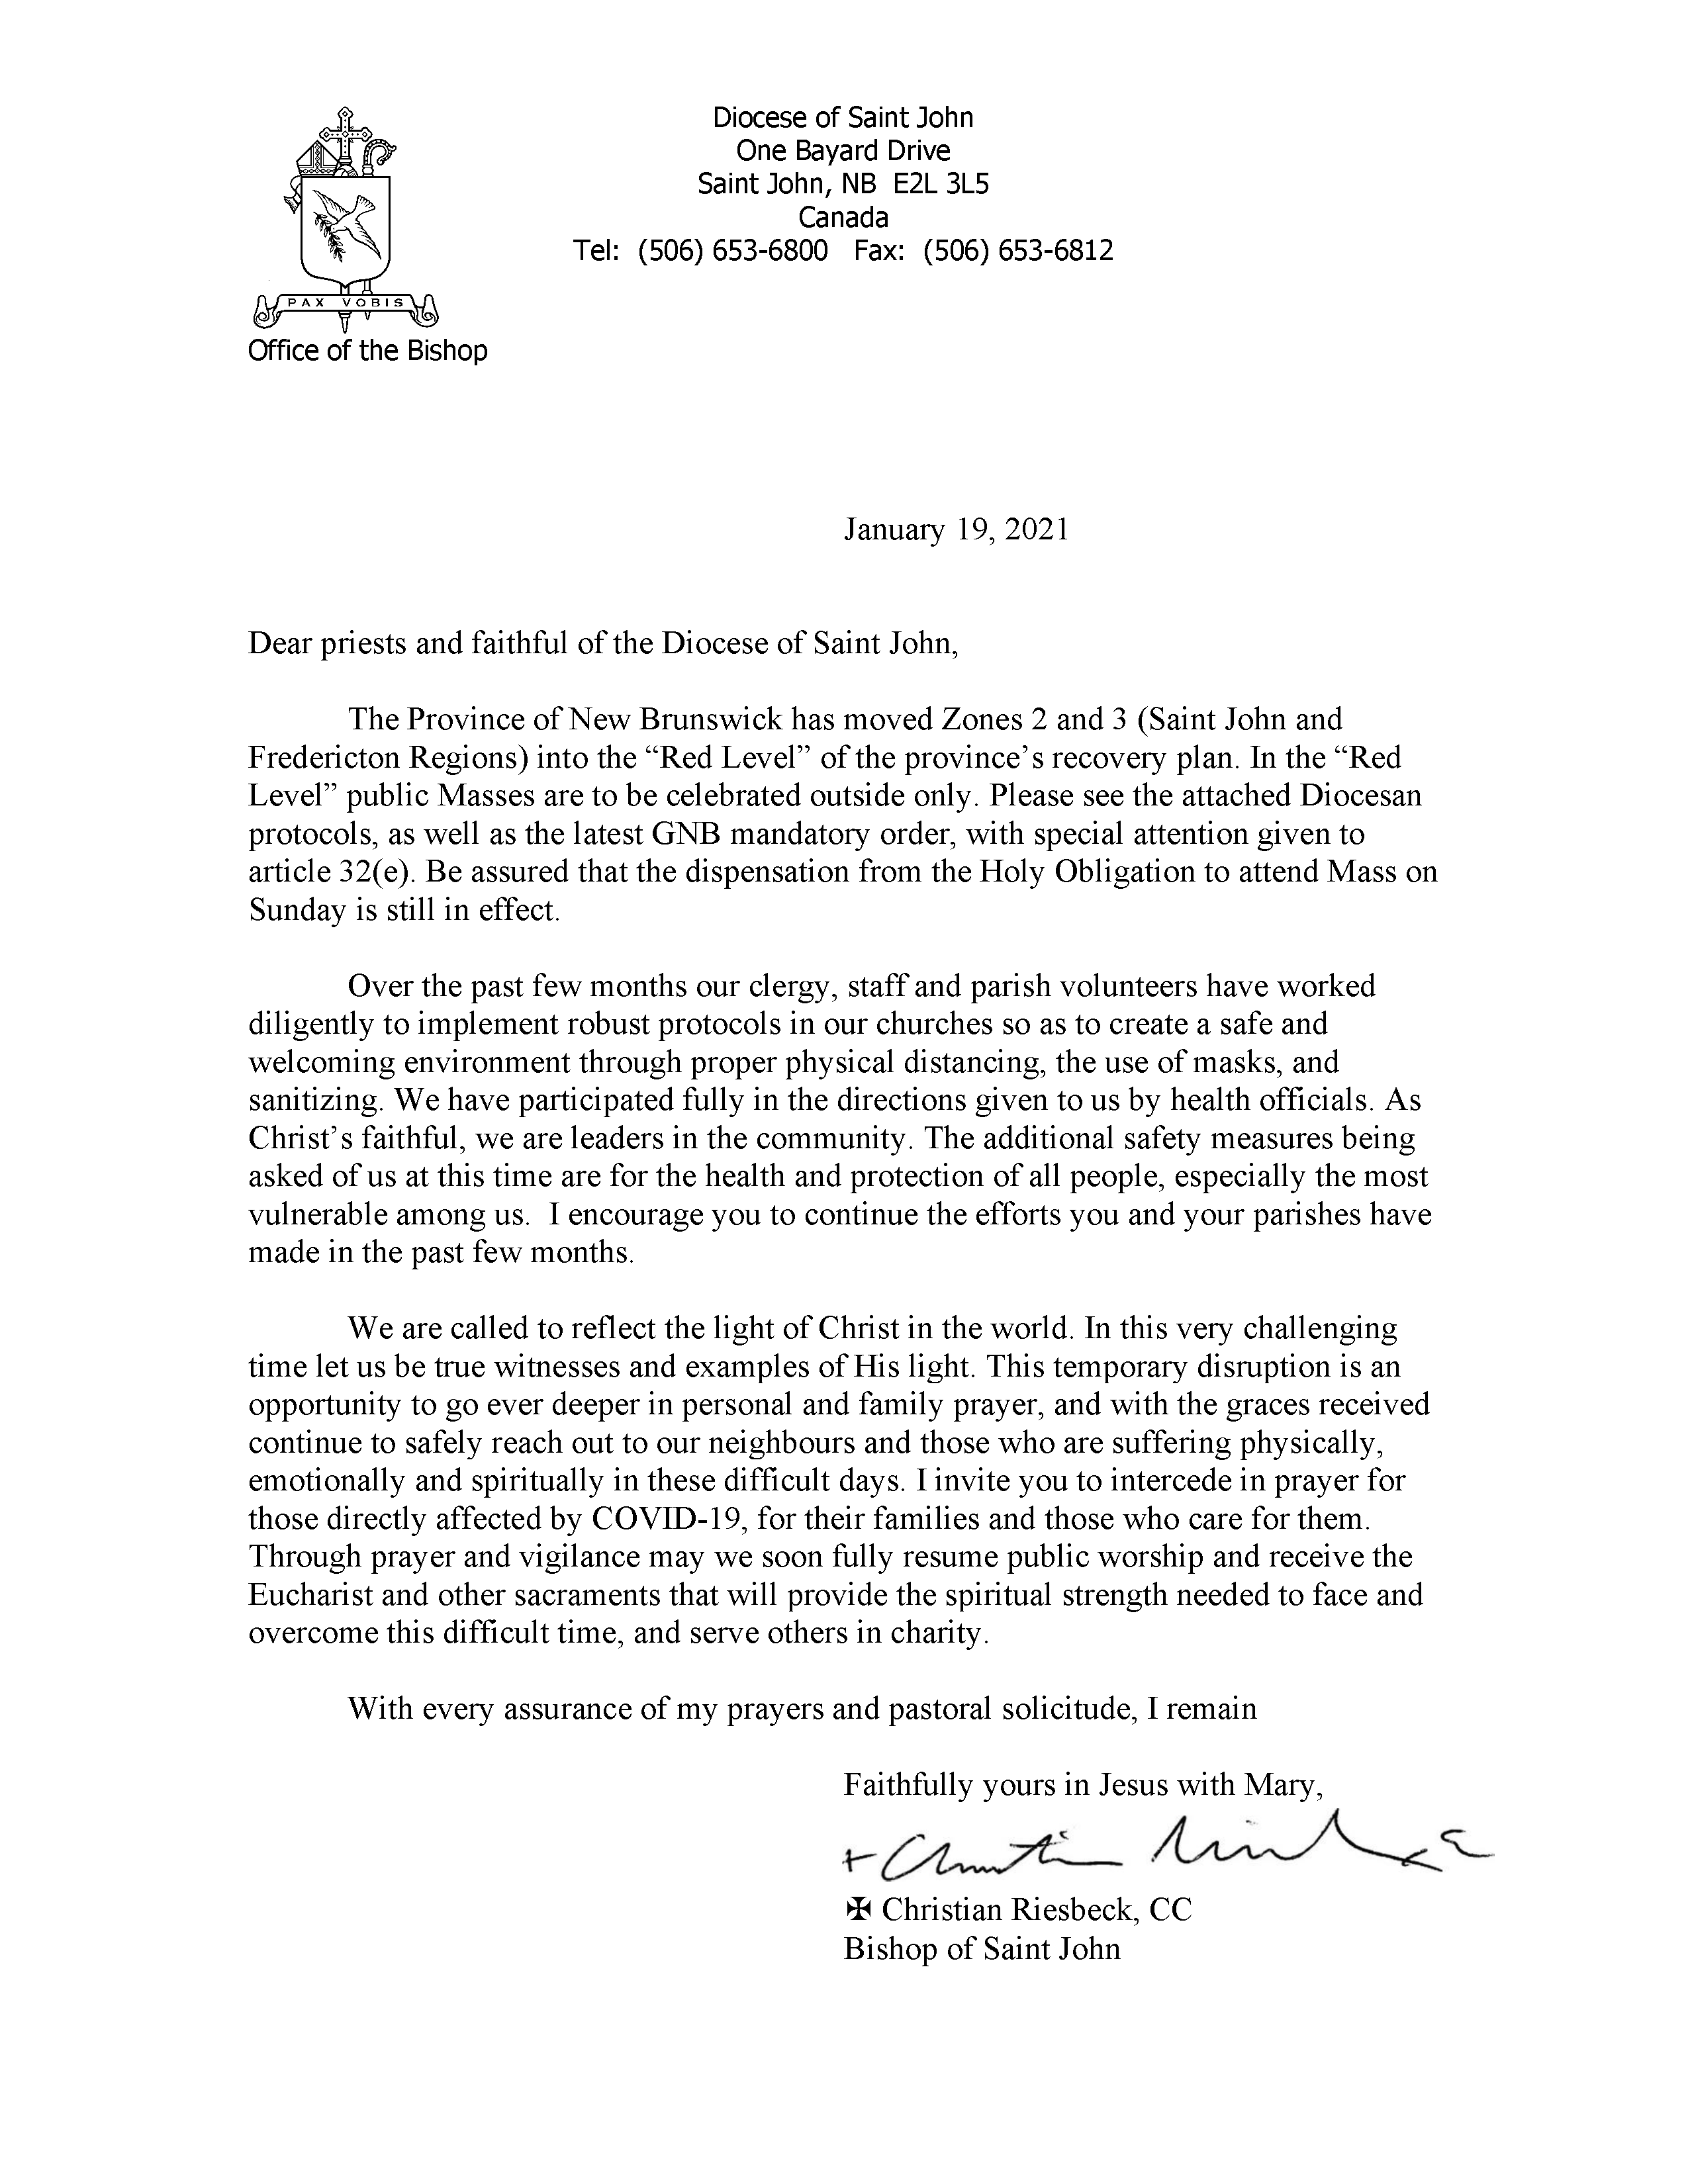 Bishop's Letter